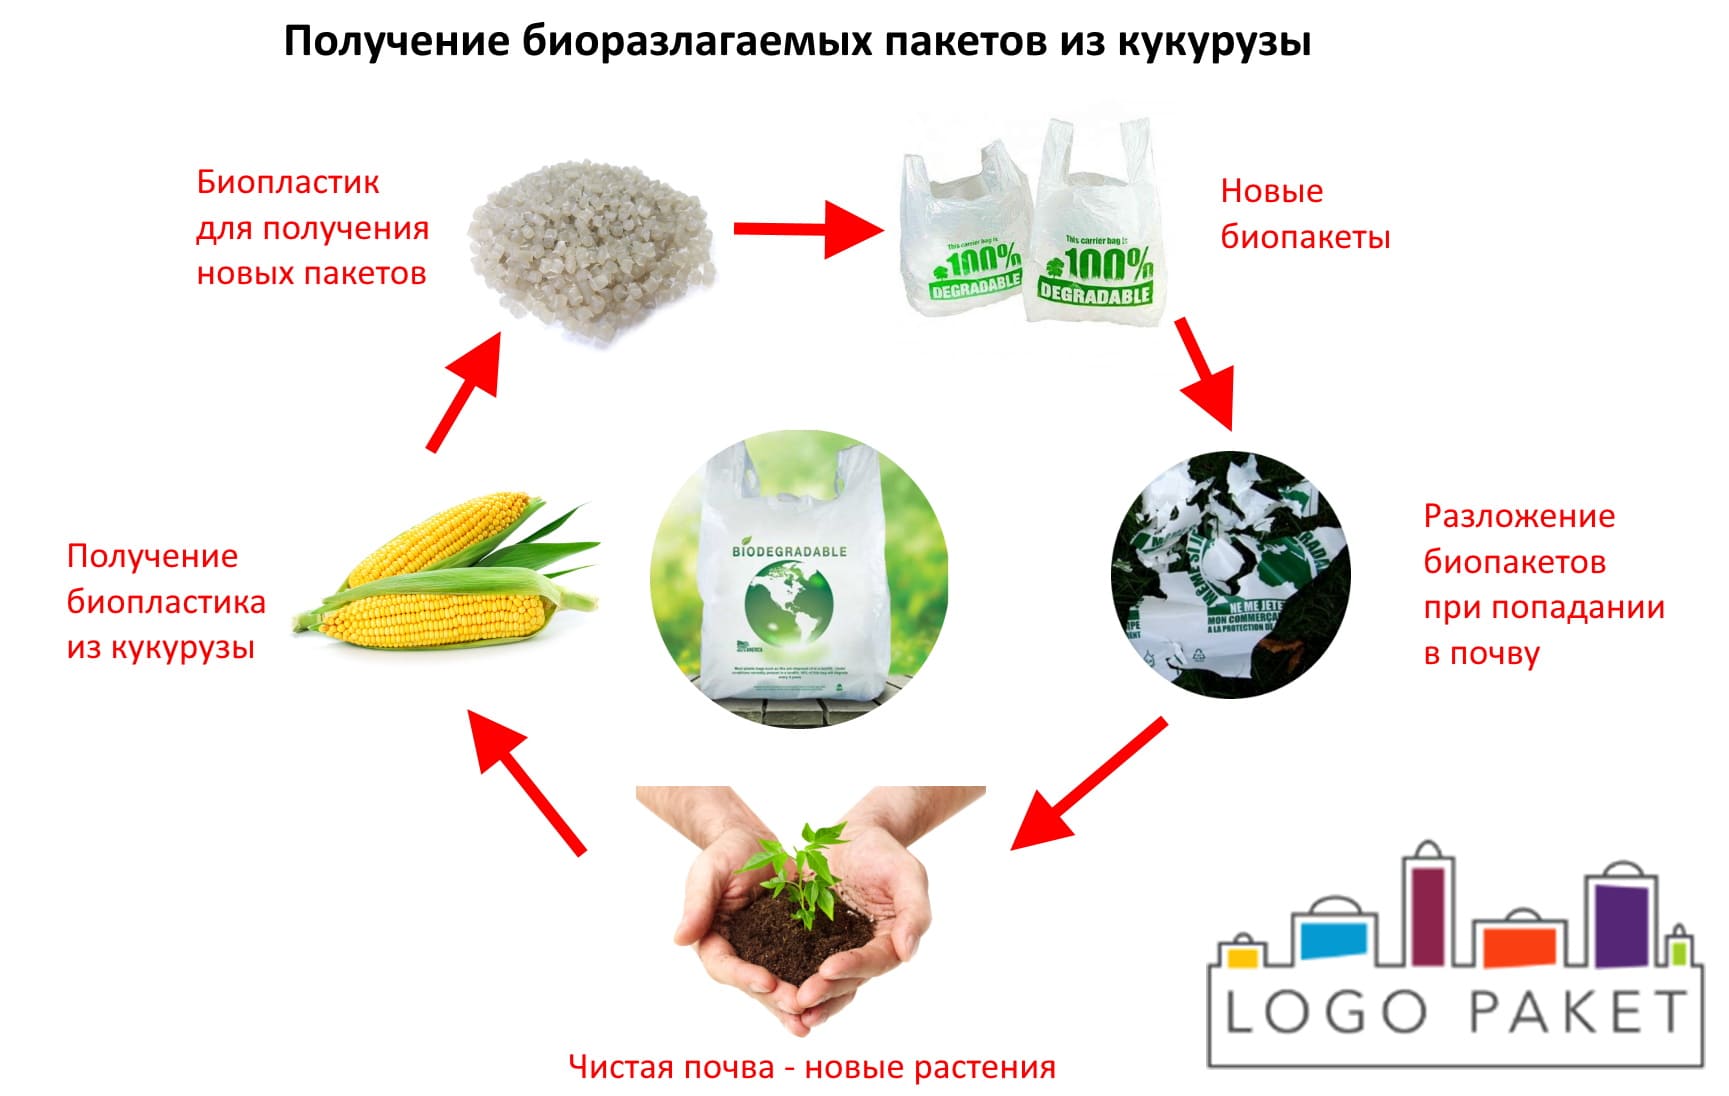 Биопакет из кукурузы производство и разложение